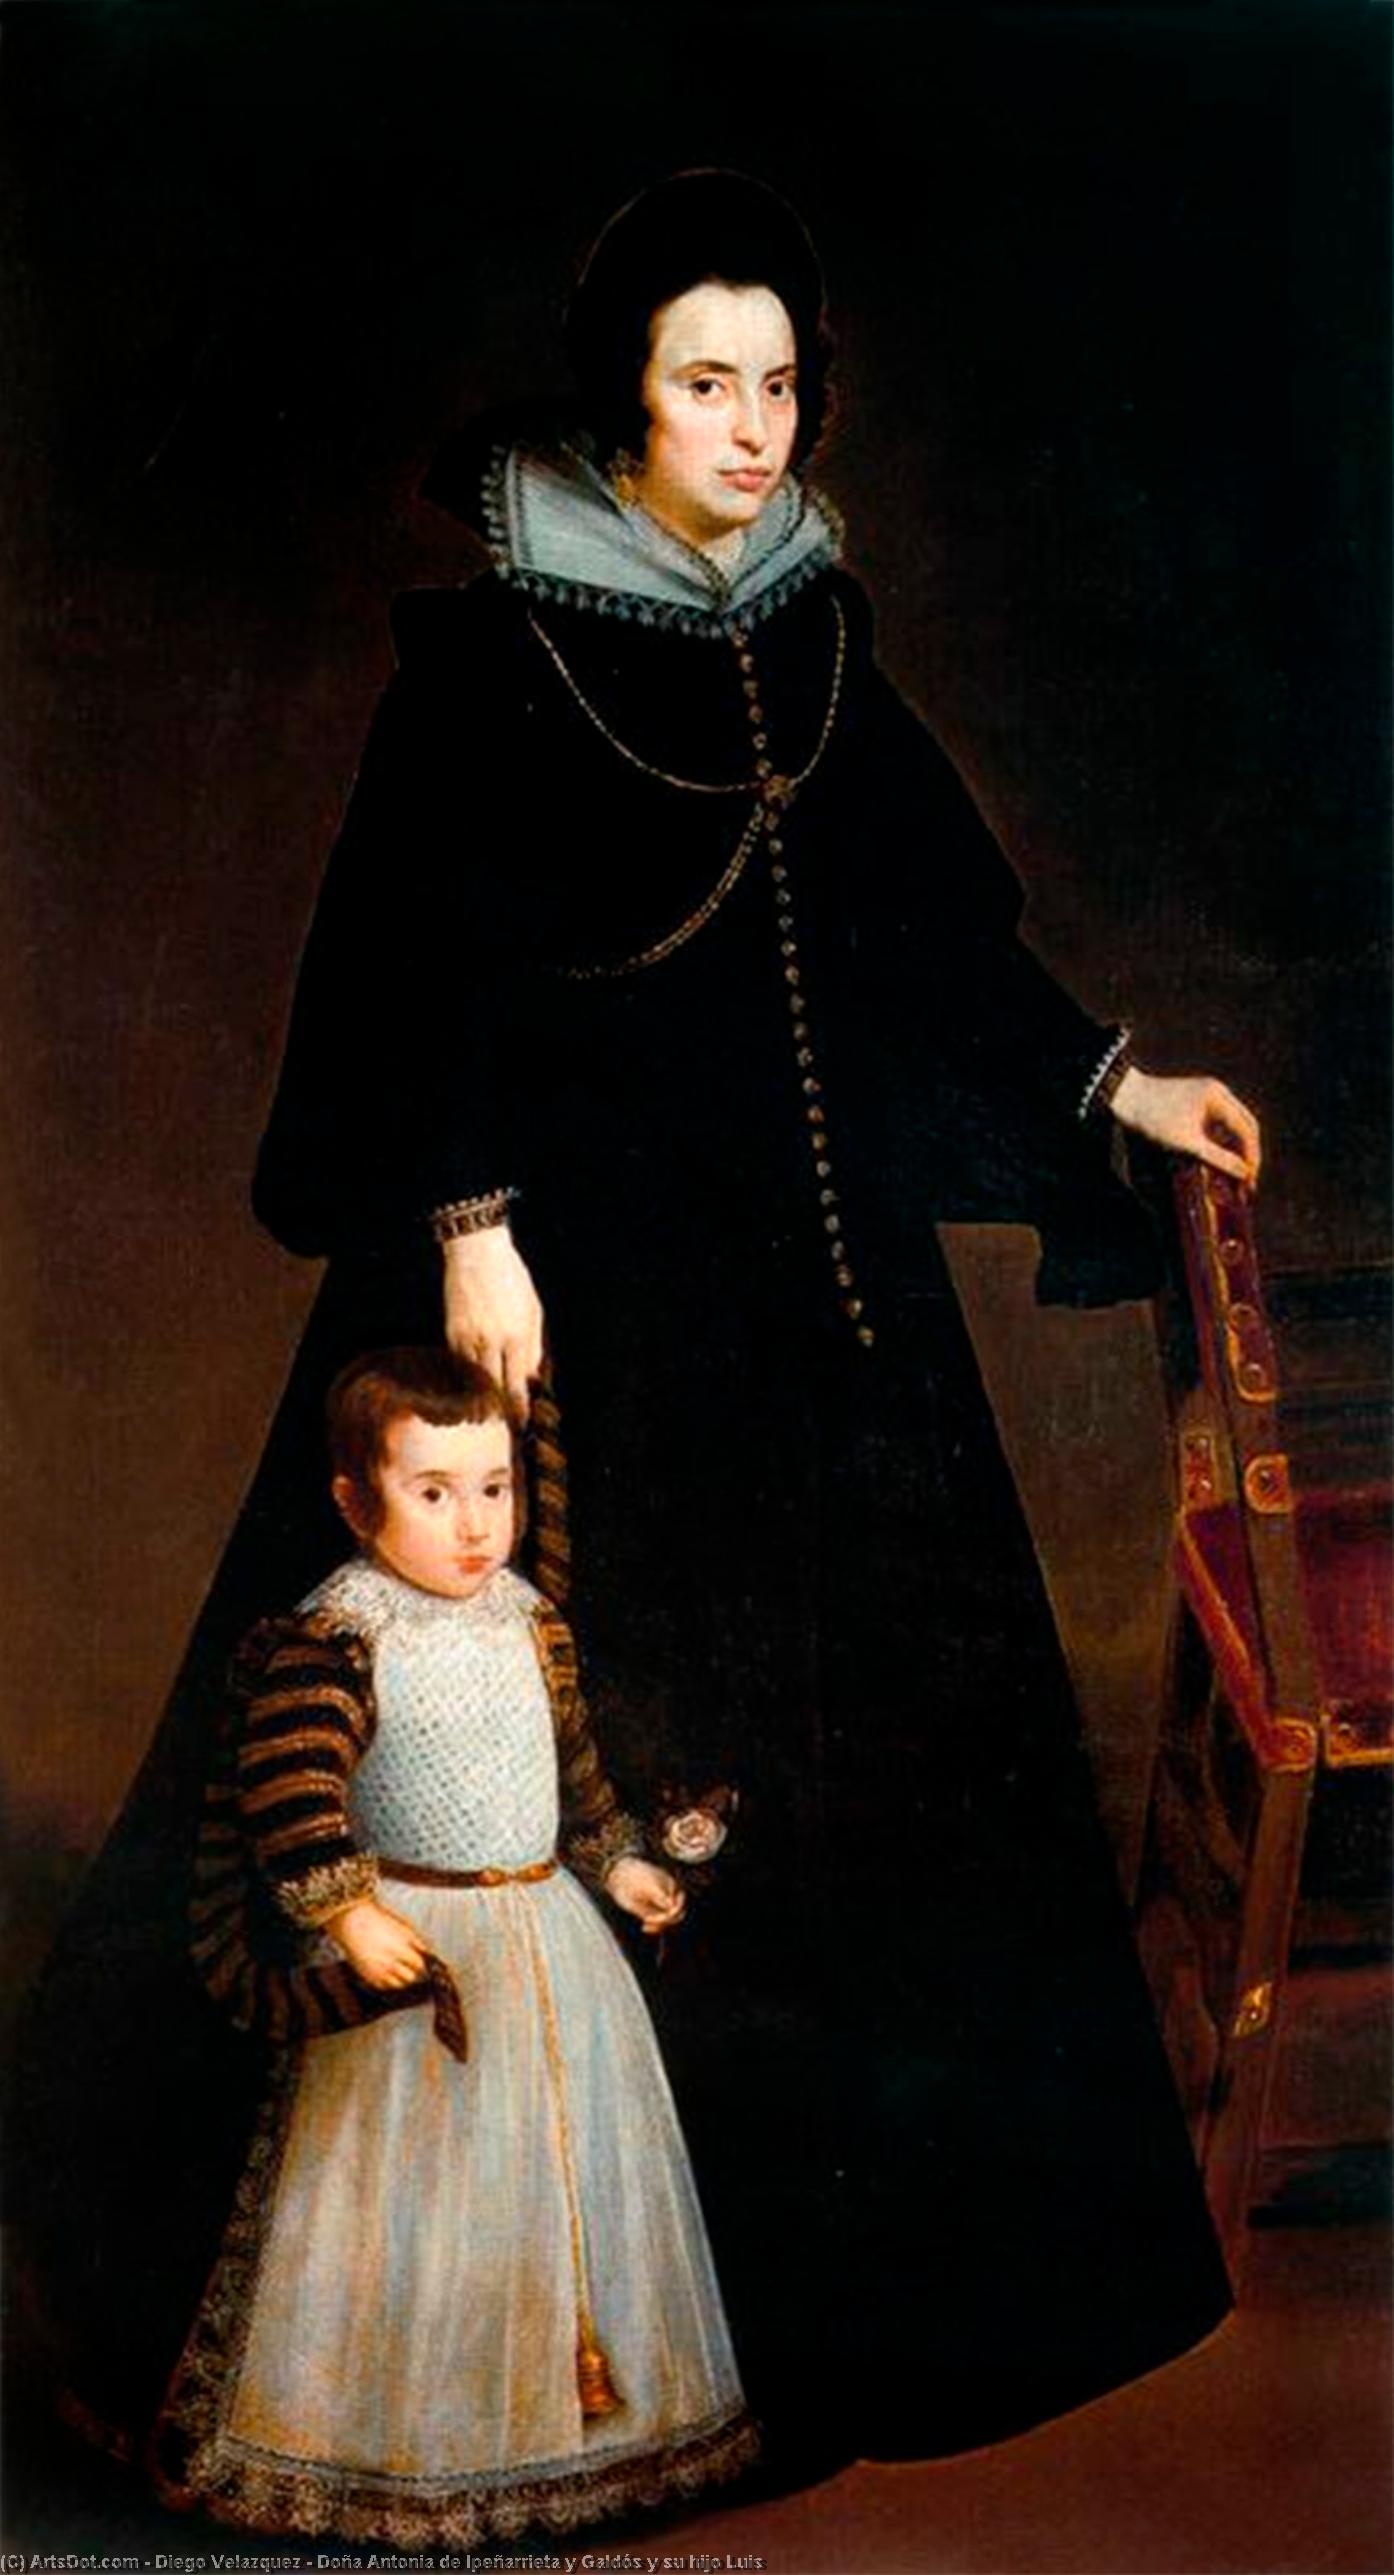 WikiOO.org - Encyclopedia of Fine Arts - Maleri, Artwork Diego Velazquez - Doña Antonia de Ipeñarrieta y Galdós y su hijo Luis